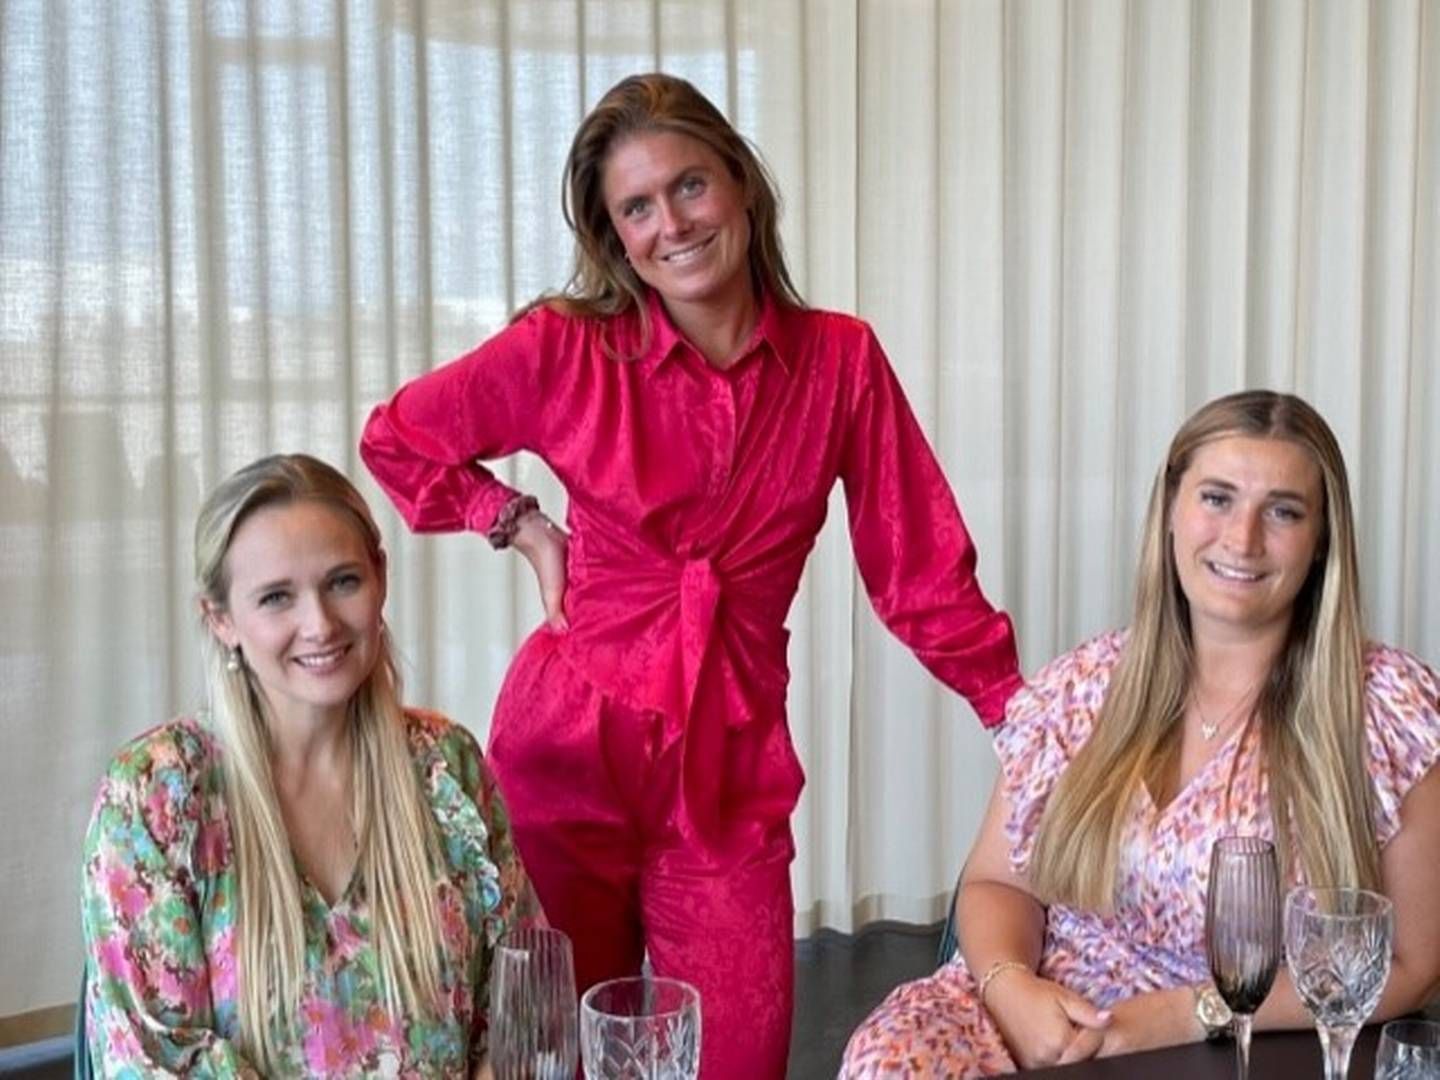 Fra venstre ses Michala Sehested, Trine Christensen og Simone Dahl som sammen har stiftet kvindenetværket Reals: ”Vi siger ikke, at der skal være færre mænd, der skal bare være en bedre balance, end der er nu,” lyder det bl.a. fra en af de tre stiftere. | Foto: PR / Reals